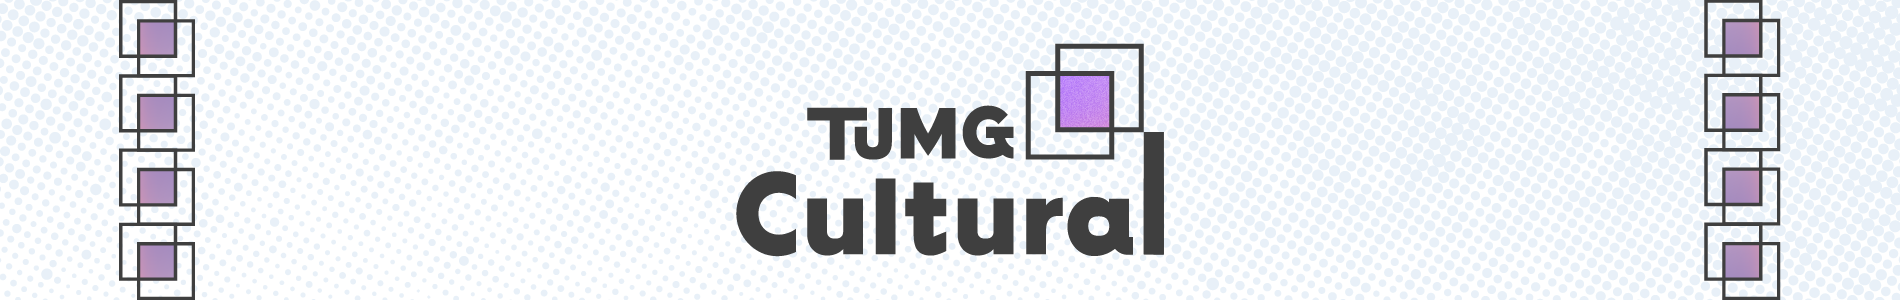 TJMG Cultural_TP_Topo.png